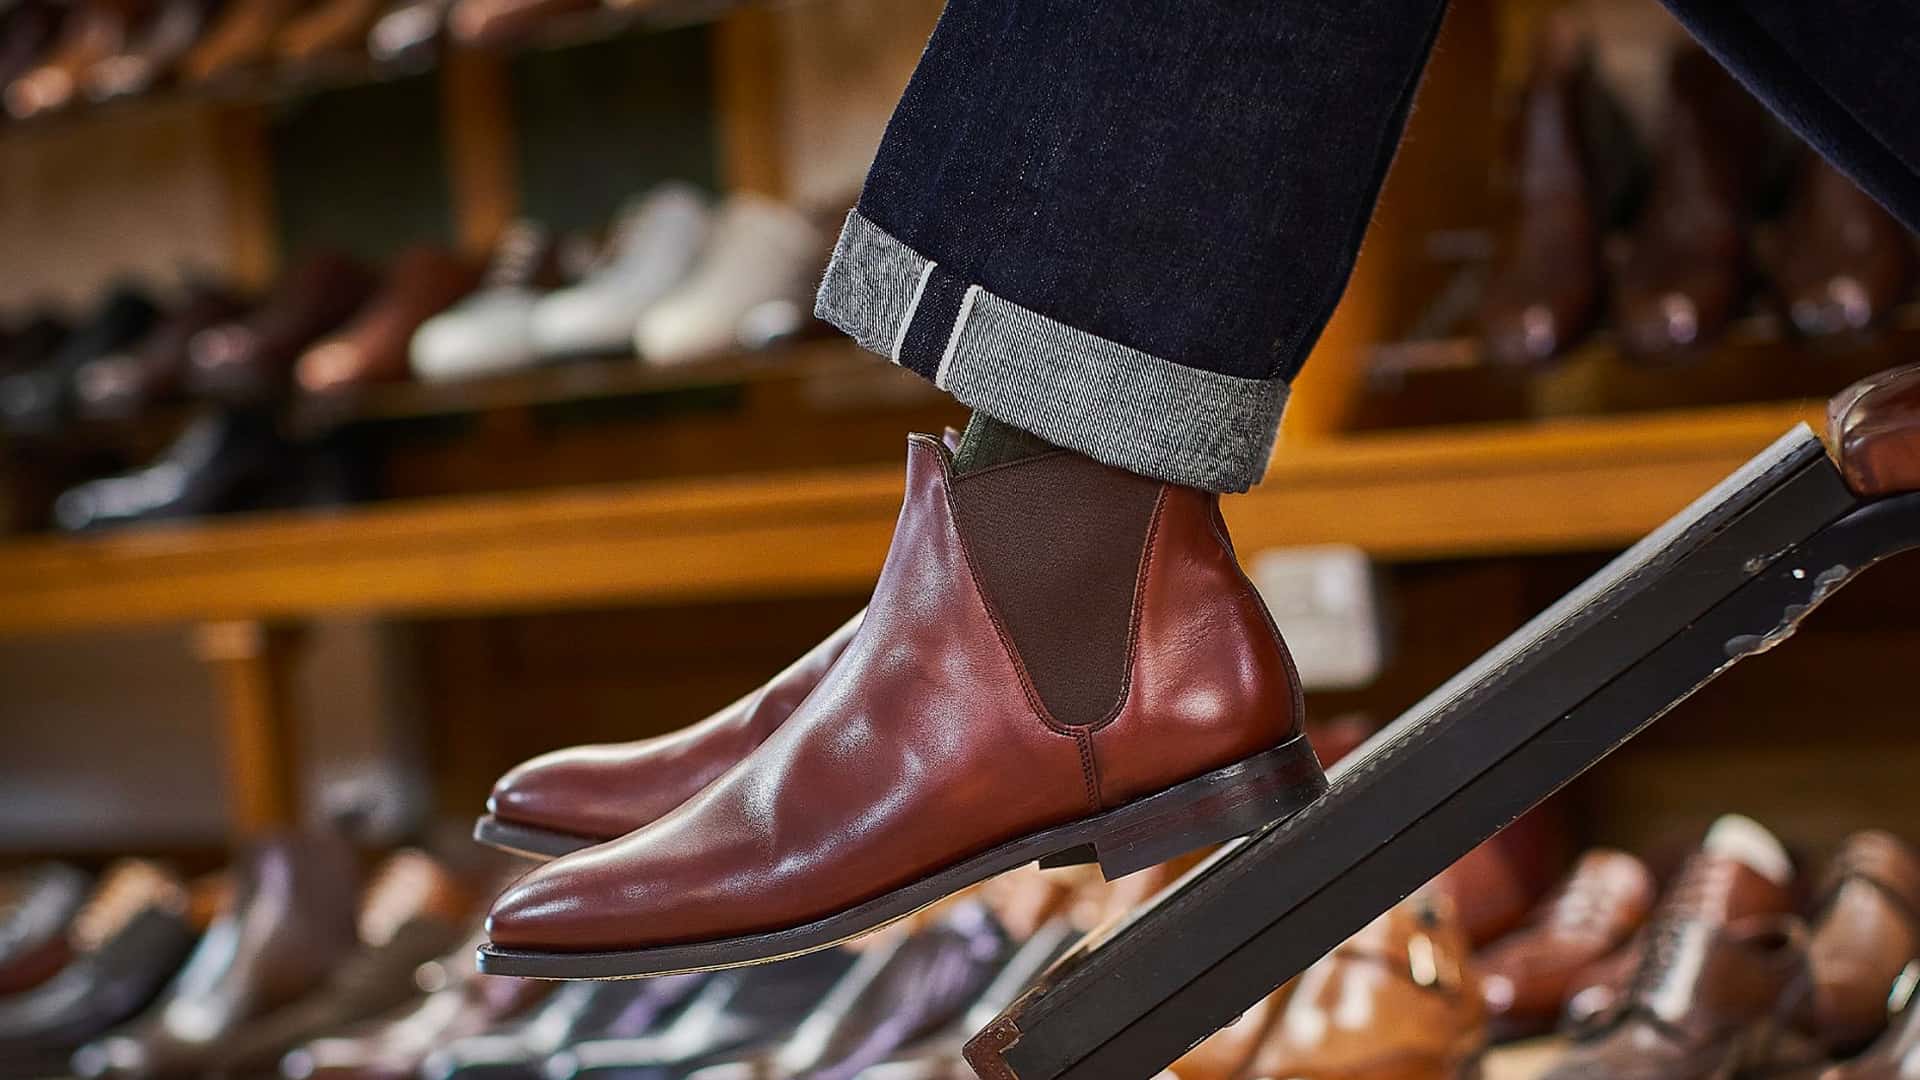 The best men's luxury boot brands